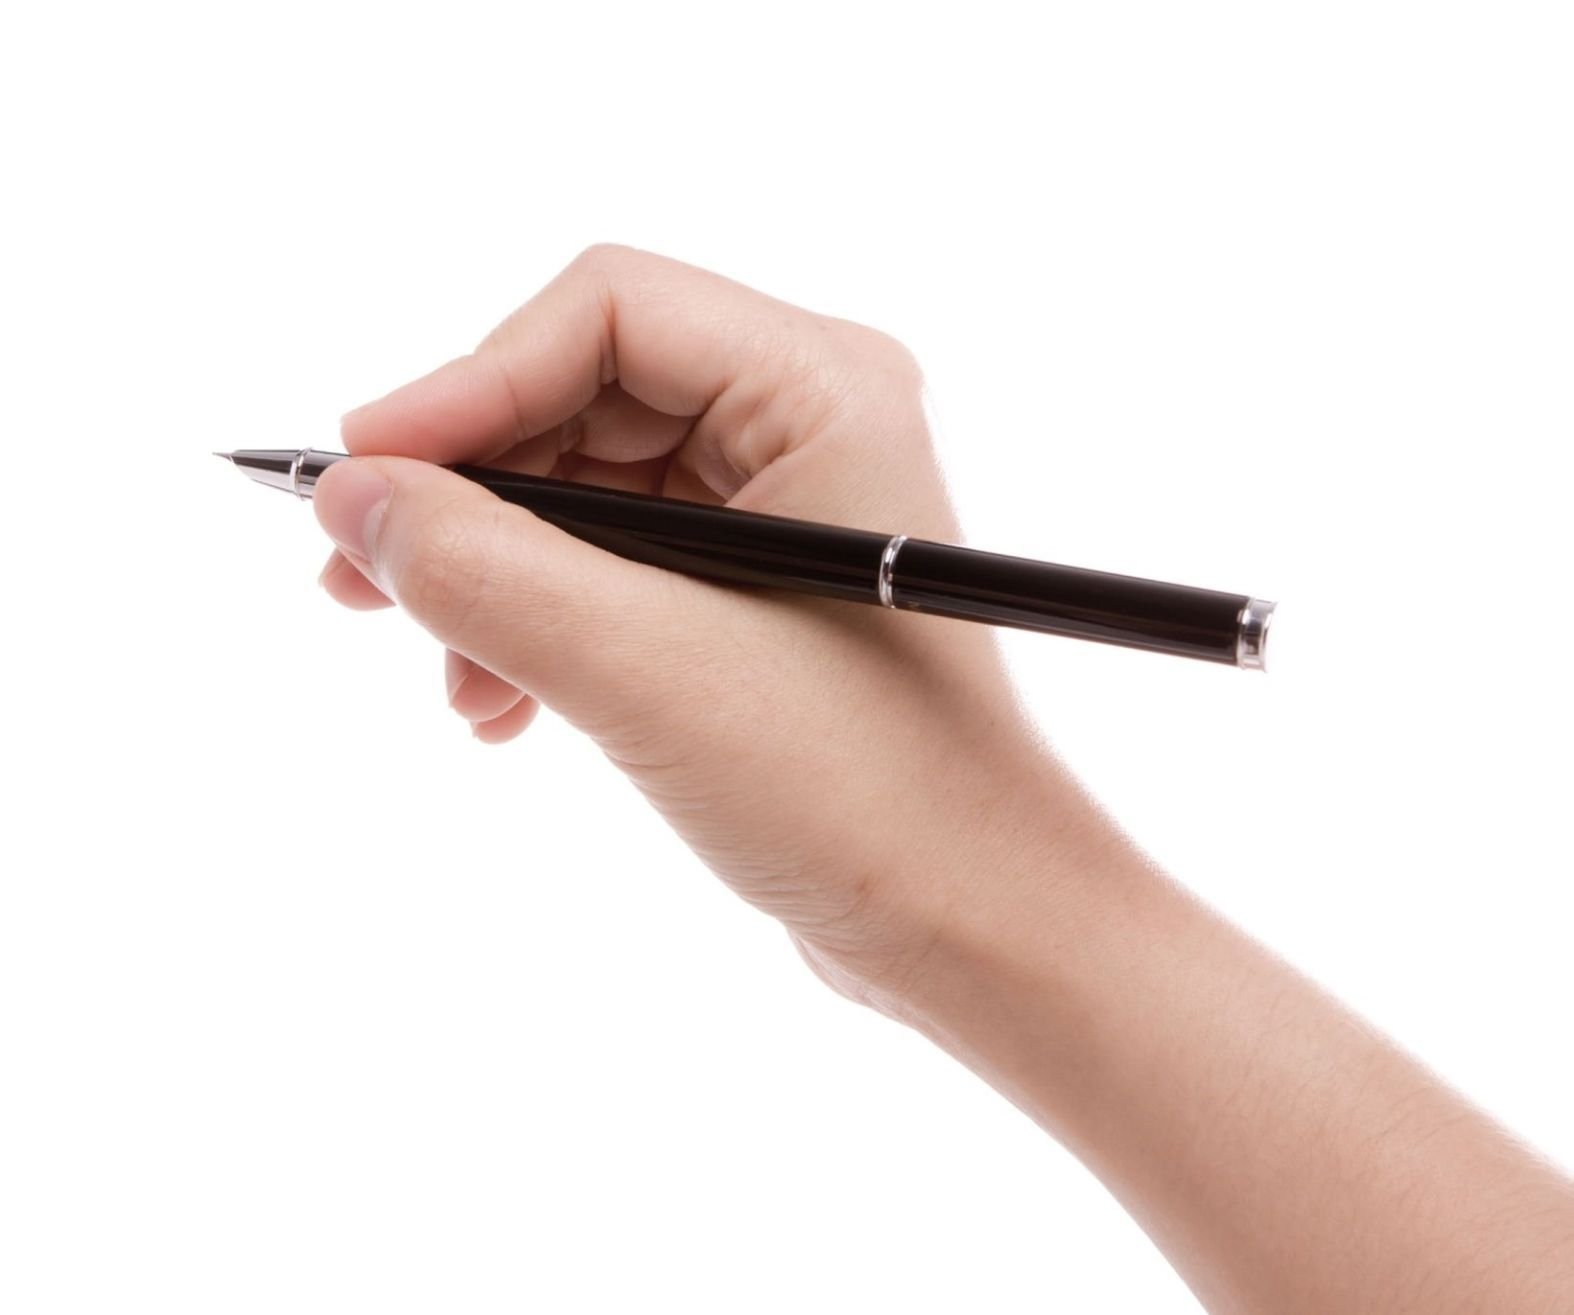 I ve got a pen. Рука с ручкой. Рука с авторучкой. Женская рука с ручкой. Рука держит ручку.